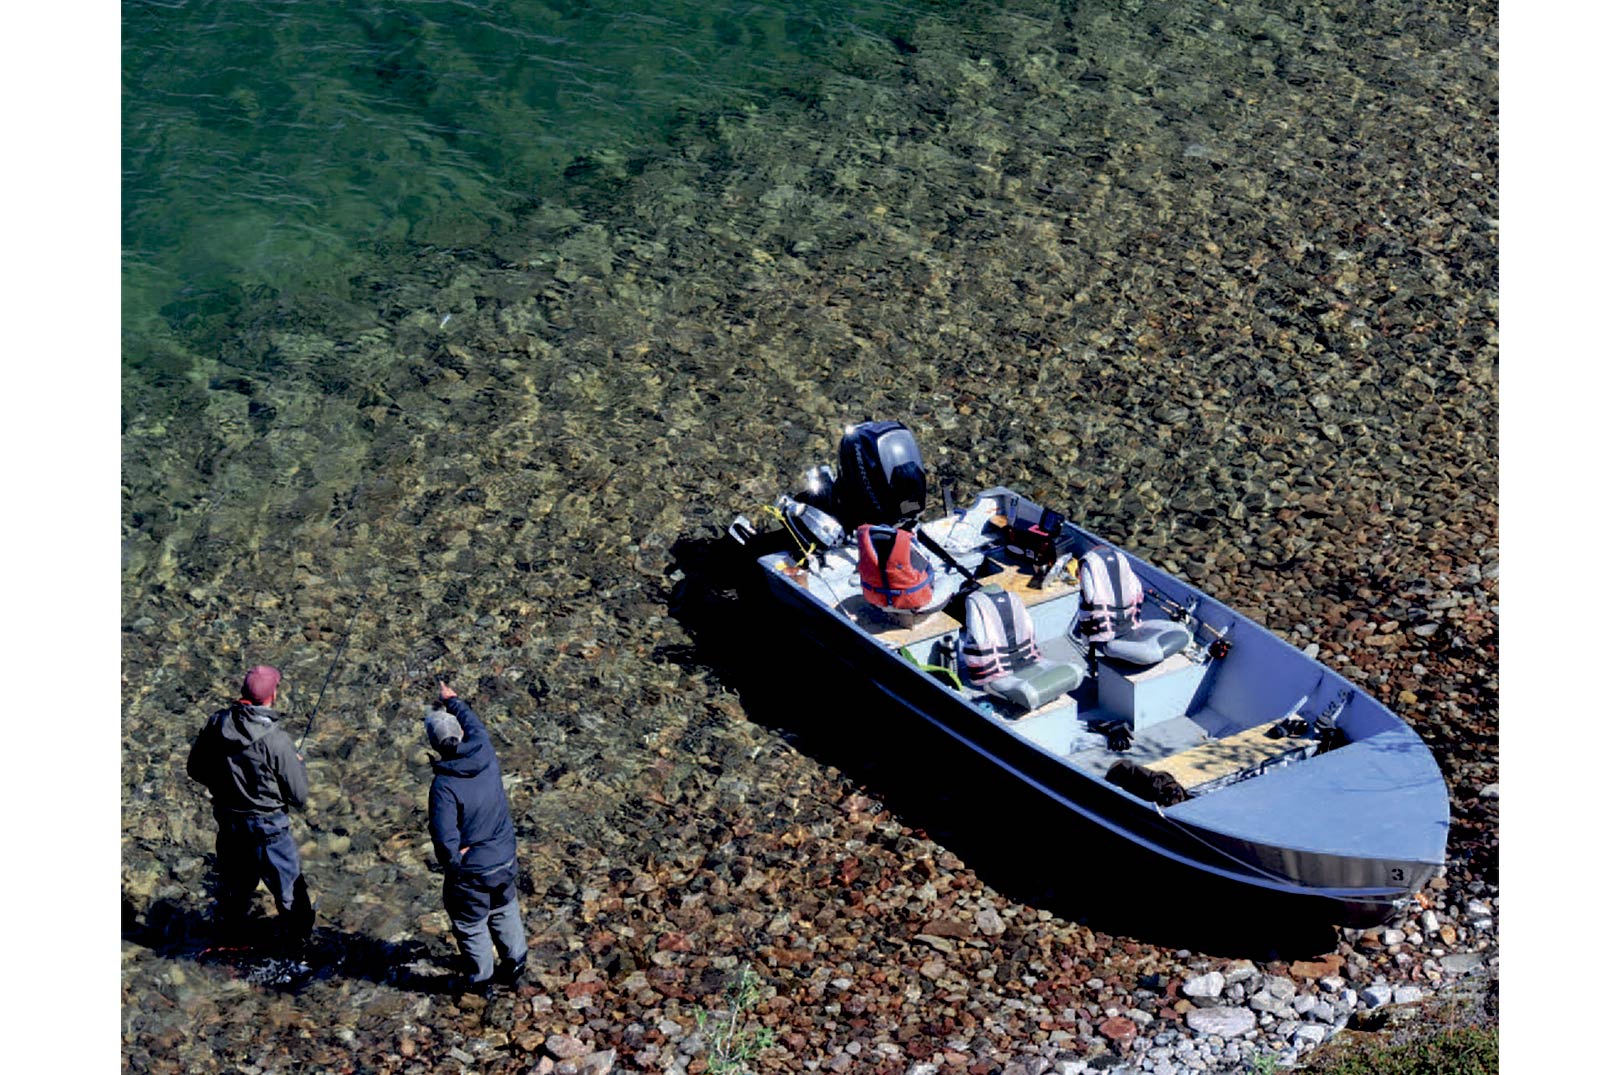 Langs nogle af Great Bear Lakes drastiske forkastninger, kan man vadefiske og kaste udover 10-15 meter vand. Langs disse dybdekurver er der gode chancer for at finde patruljerende lake trout.